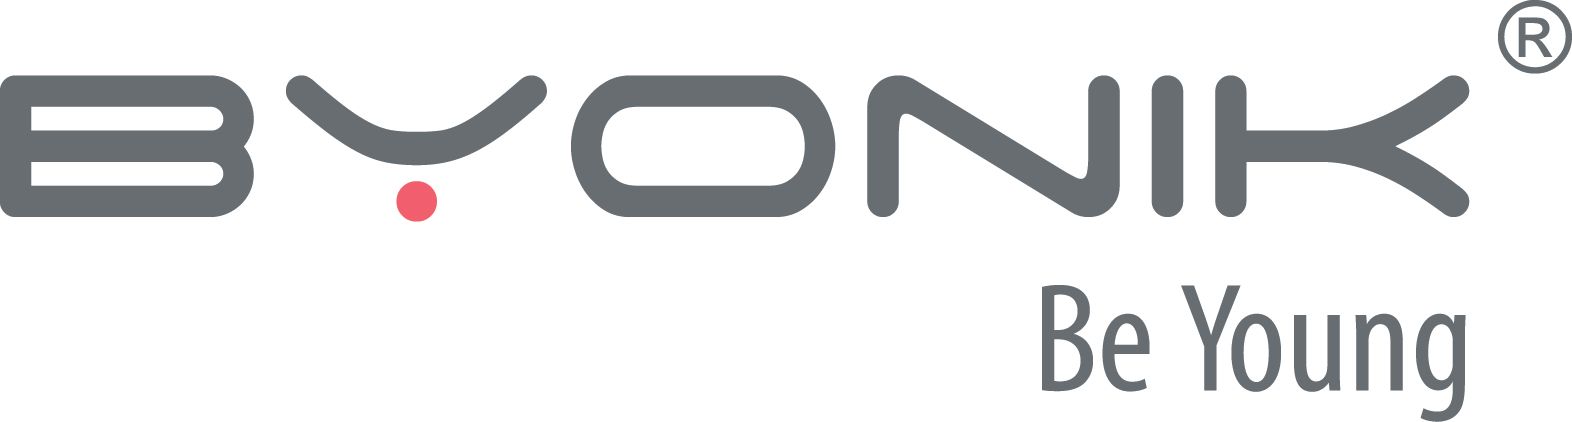 Byonik Logo